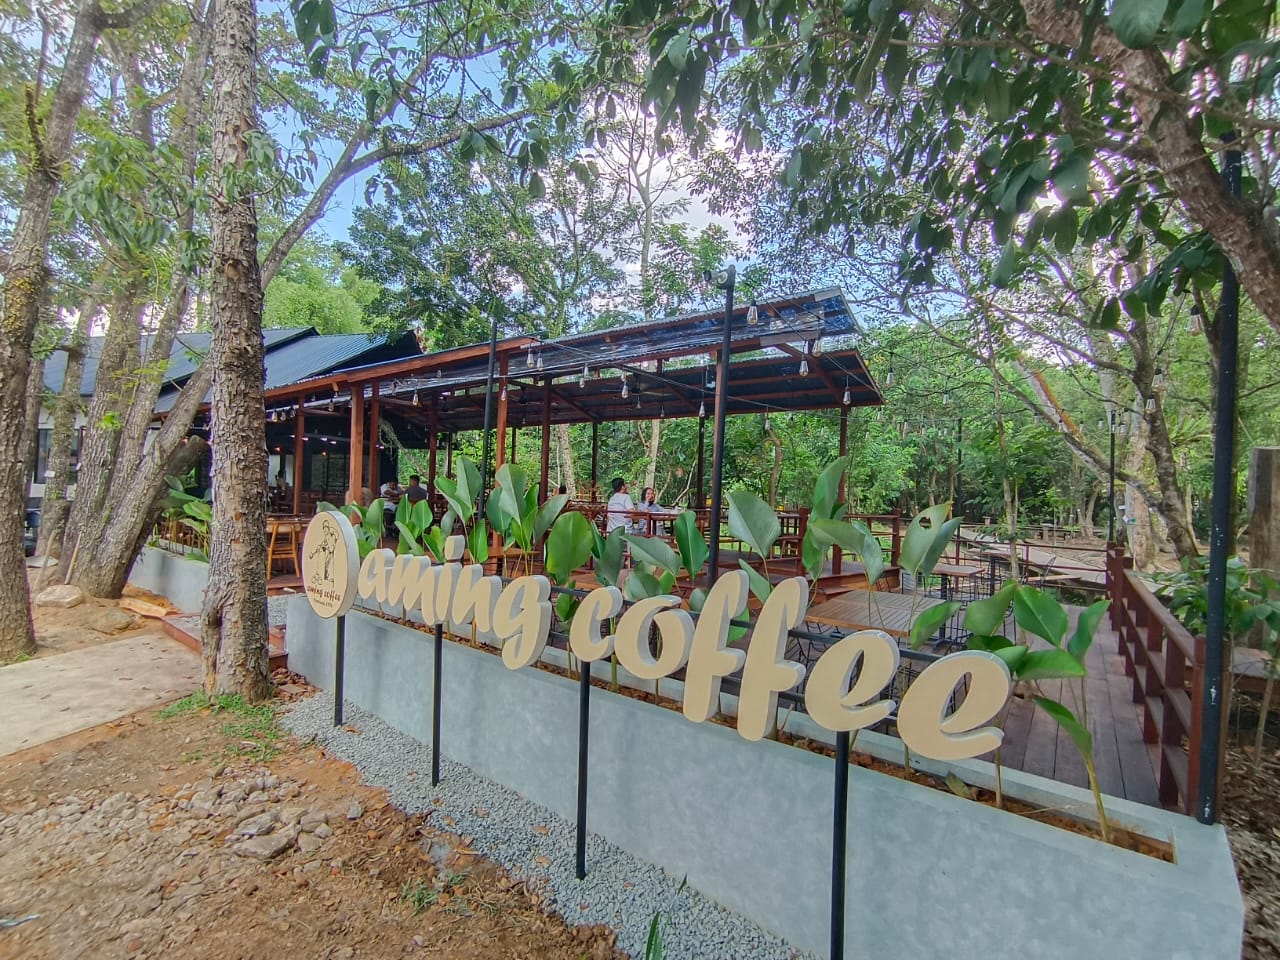 Suasana Aming Coffee yang berlokasi di Galeri Hasil Hutan Jalan Veteran Pontianak. (Foto: Indri)